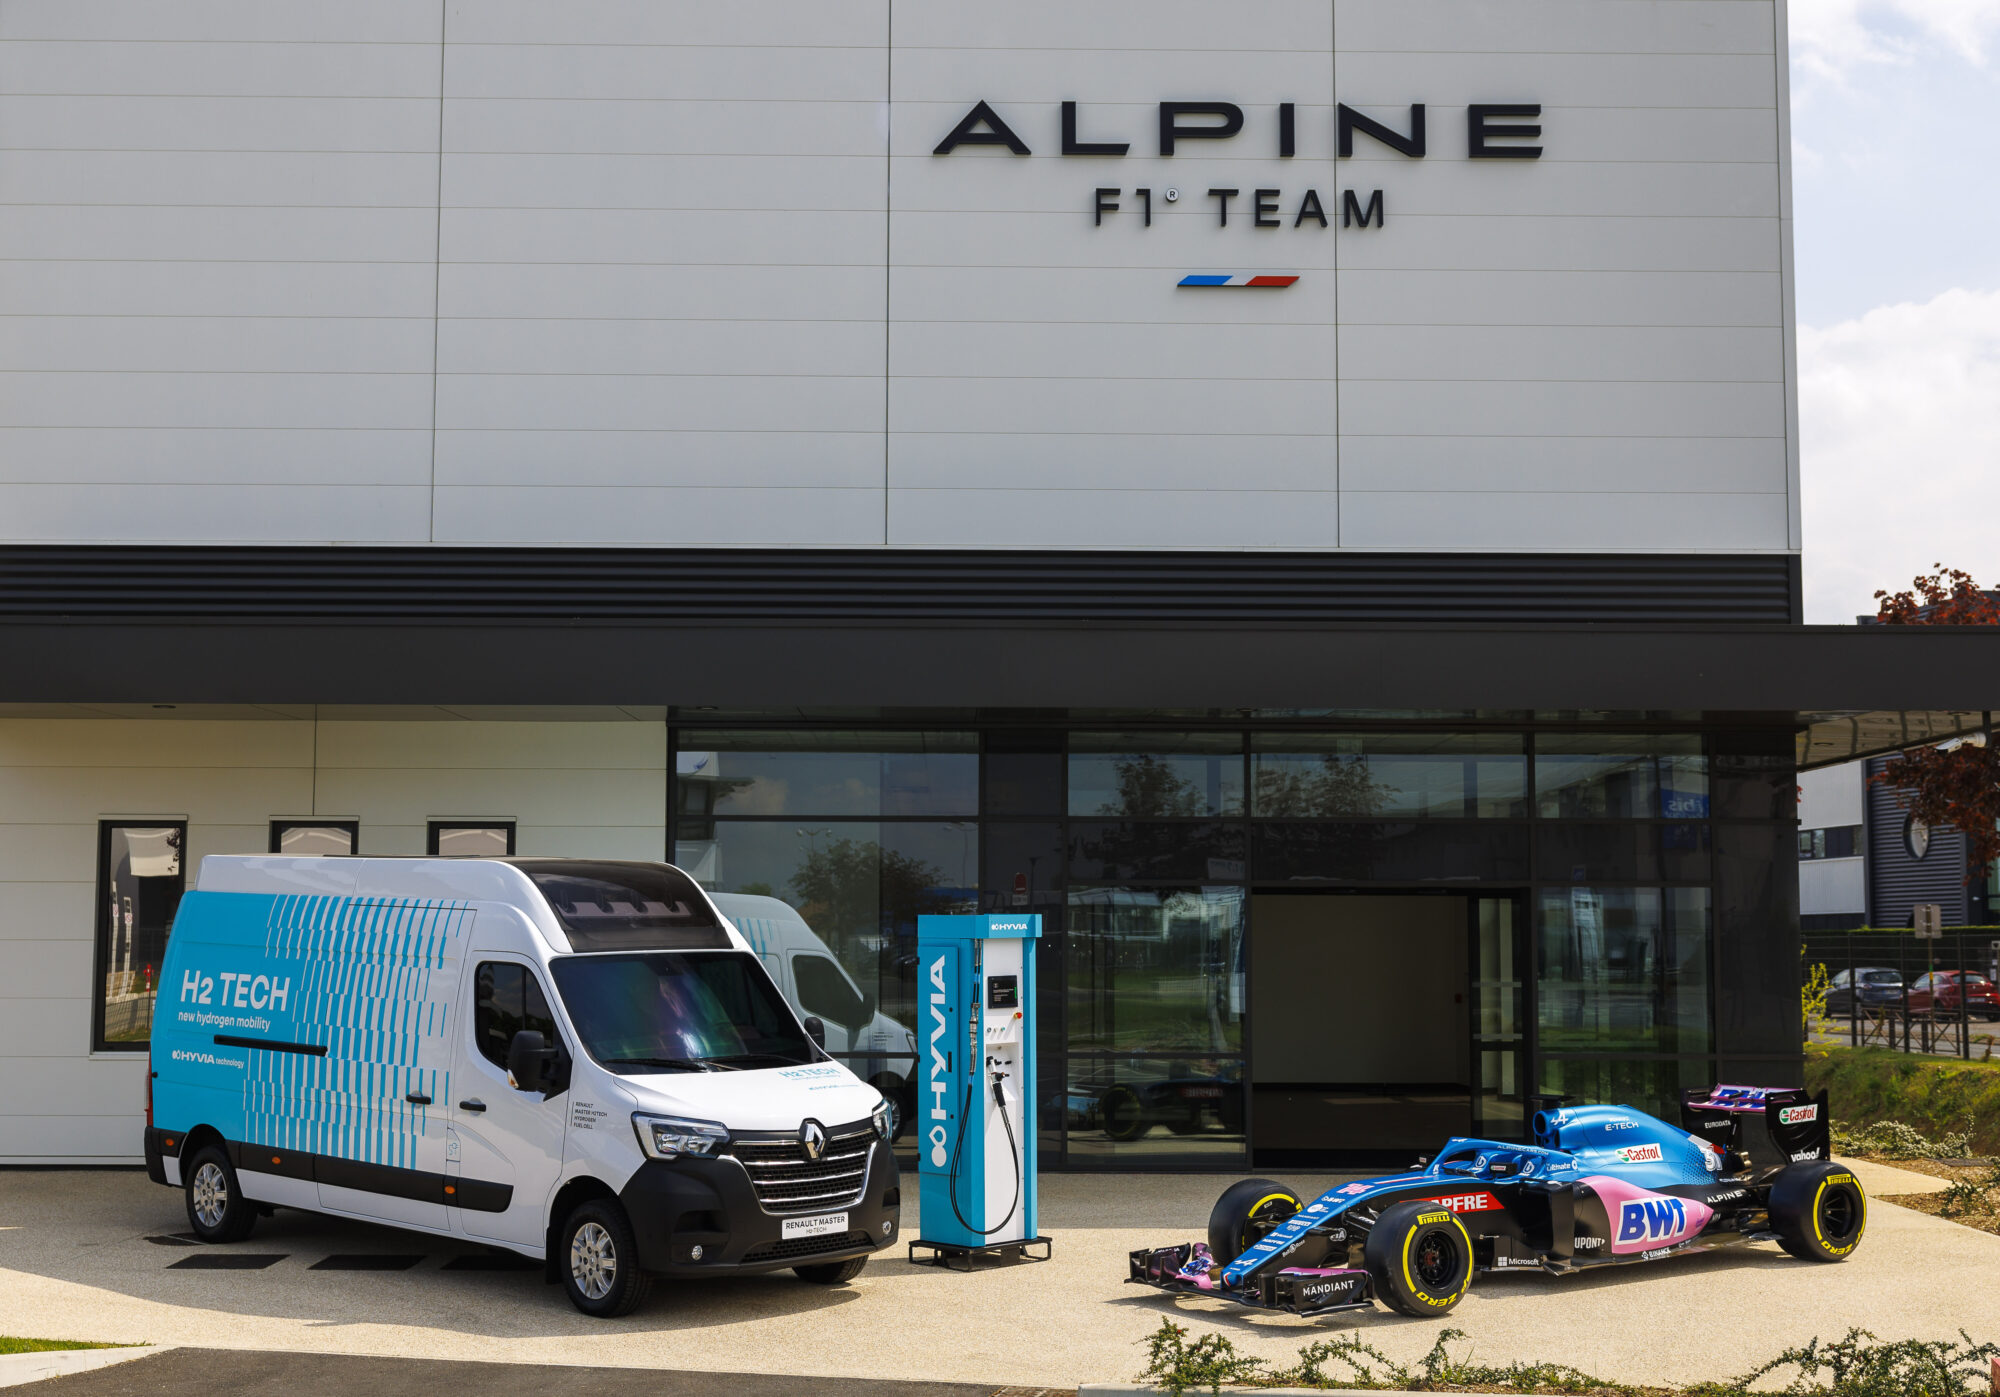 2022 - HYVIA, partenaire officiel de BWT Alpine F1 Team et du Forum Smart #038; Sustainable Mobility du Grand Prix de France de Formule 1 (1)